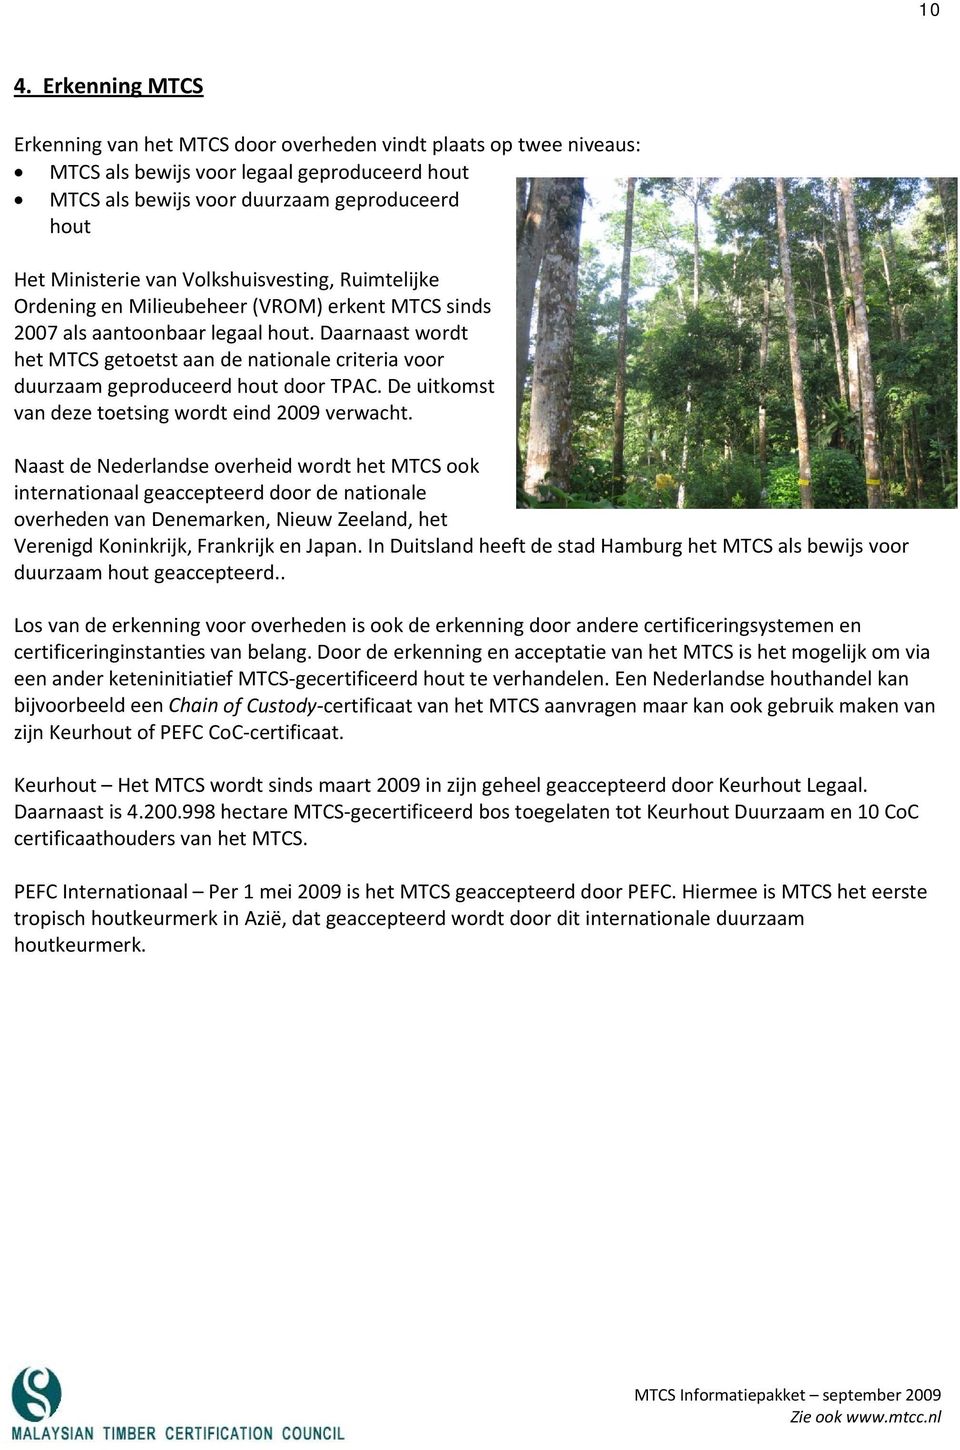 Daarnaast wordt het MTCS getoetst aan de nationale criteria voor duurzaam geproduceerd hout door TPAC. De uitkomst van deze toetsing wordt eind 2009 verwacht.